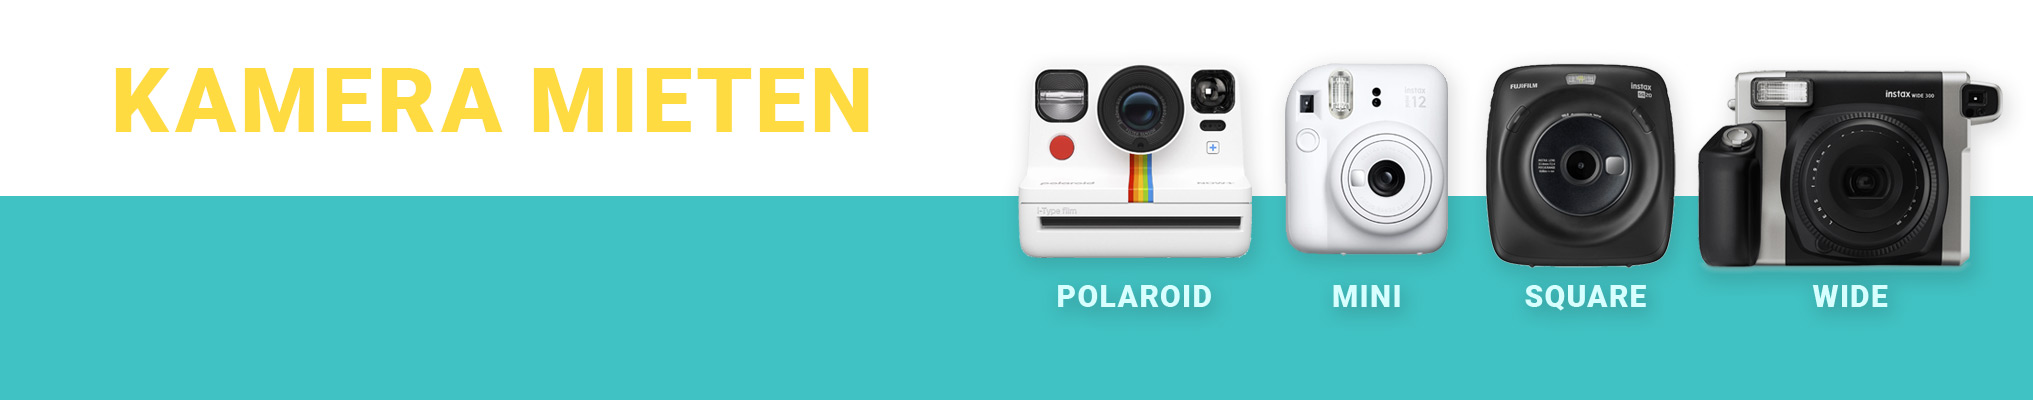 Polaroid Kamera Verleih für Hochzeiten: Polaroid Now+ i-Type, Instax Mini, Instax Square, Instax Wide